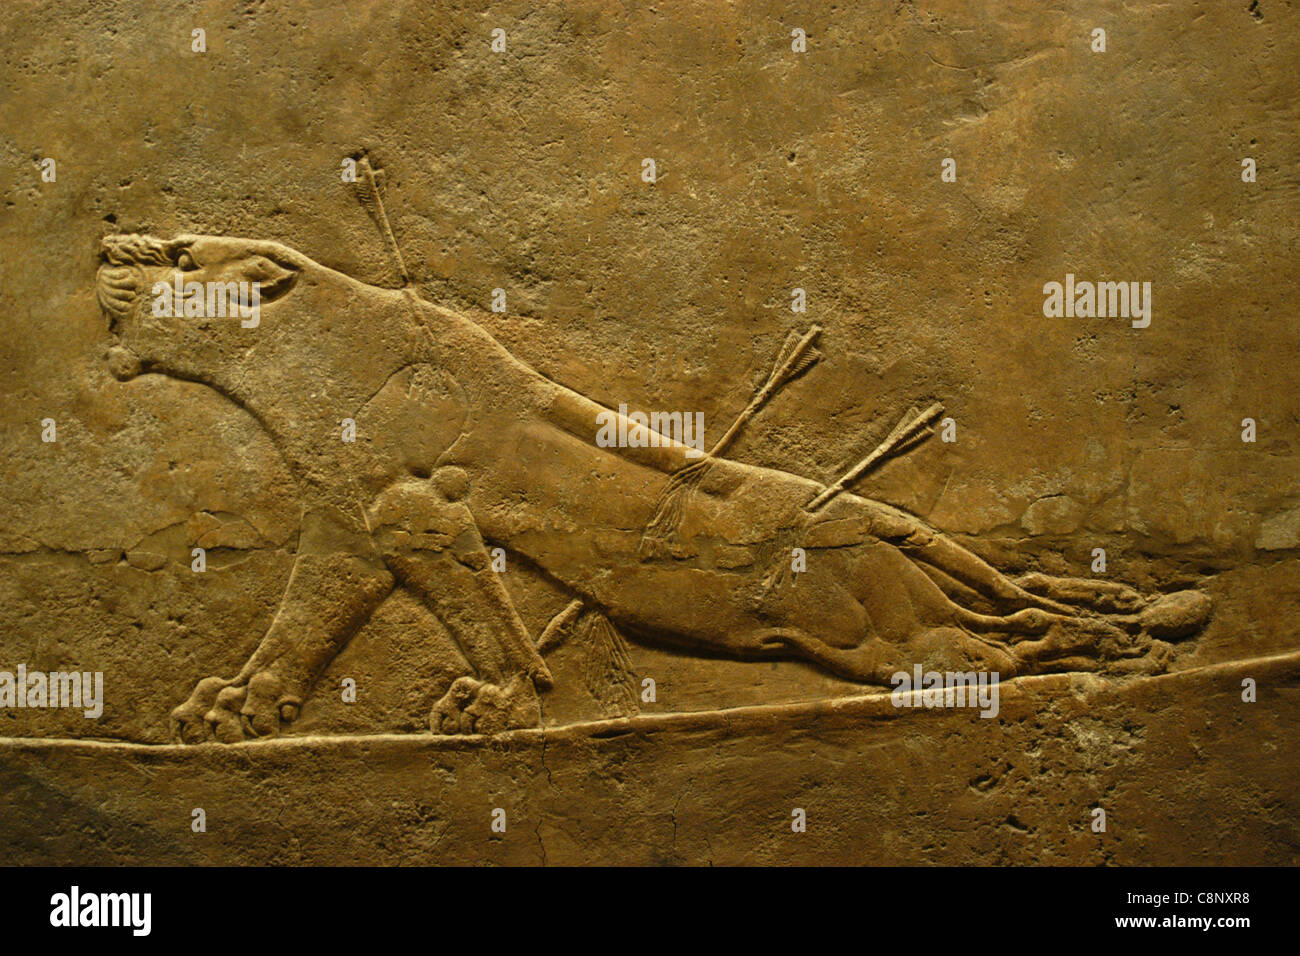 Relieve Asirio de la caza de leones real del Rey Ashurbanipal vistos en el Museo Británico de Londres, Inglaterra, Reino Unido. Foto de stock